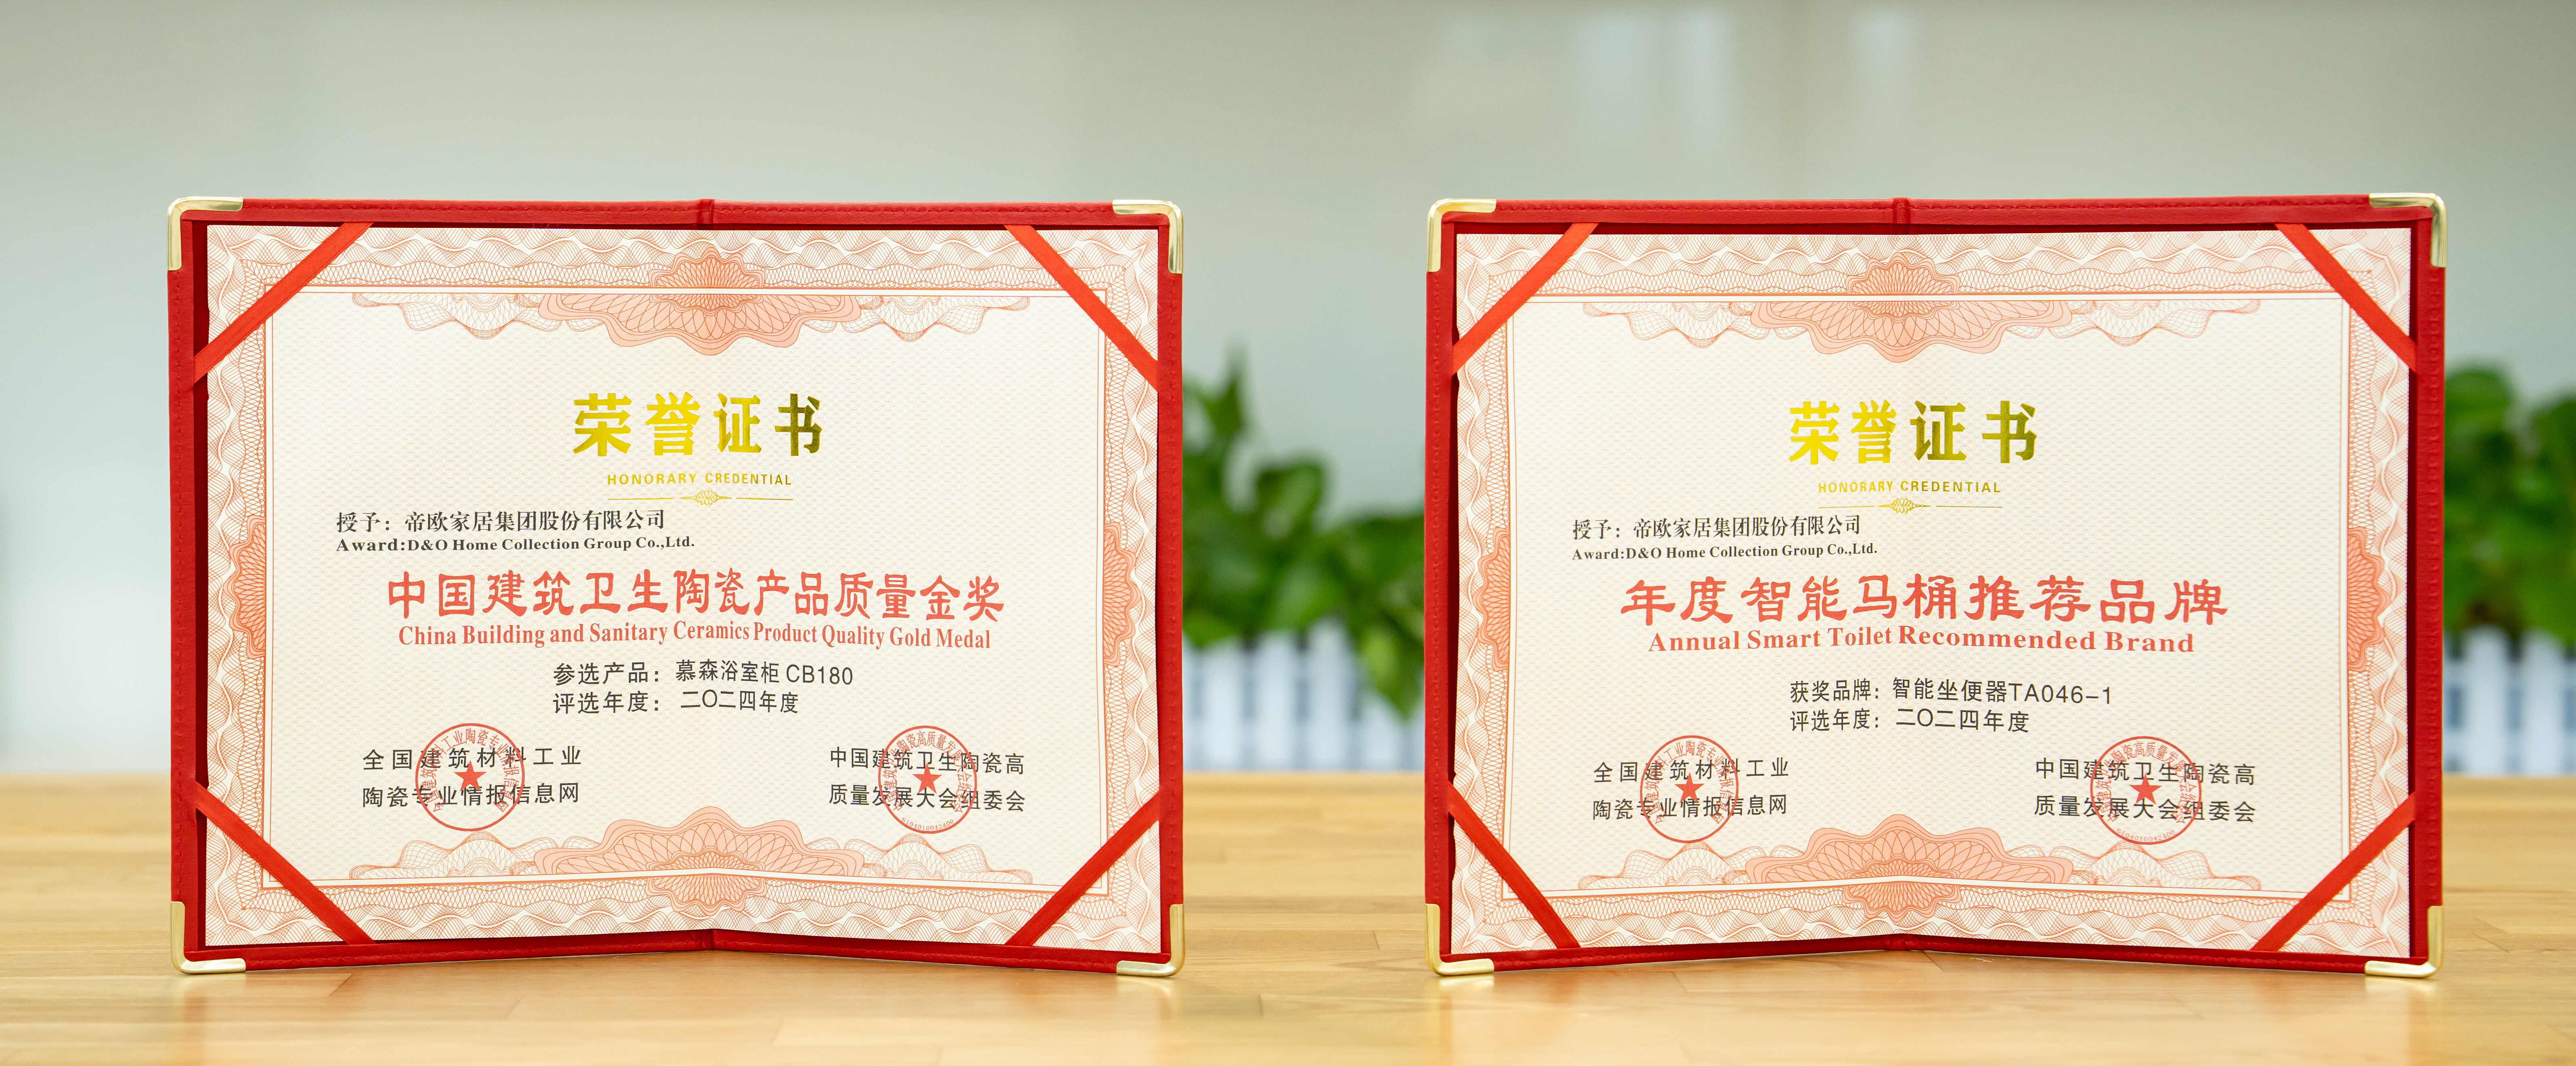 帝王洁具智能明星产品—M40静音冲智能坐便器荣获了“年度智能马桶推荐品牌”，慕森浴室柜荣获了“中国建筑卫生陶瓷产品质量金奖”。